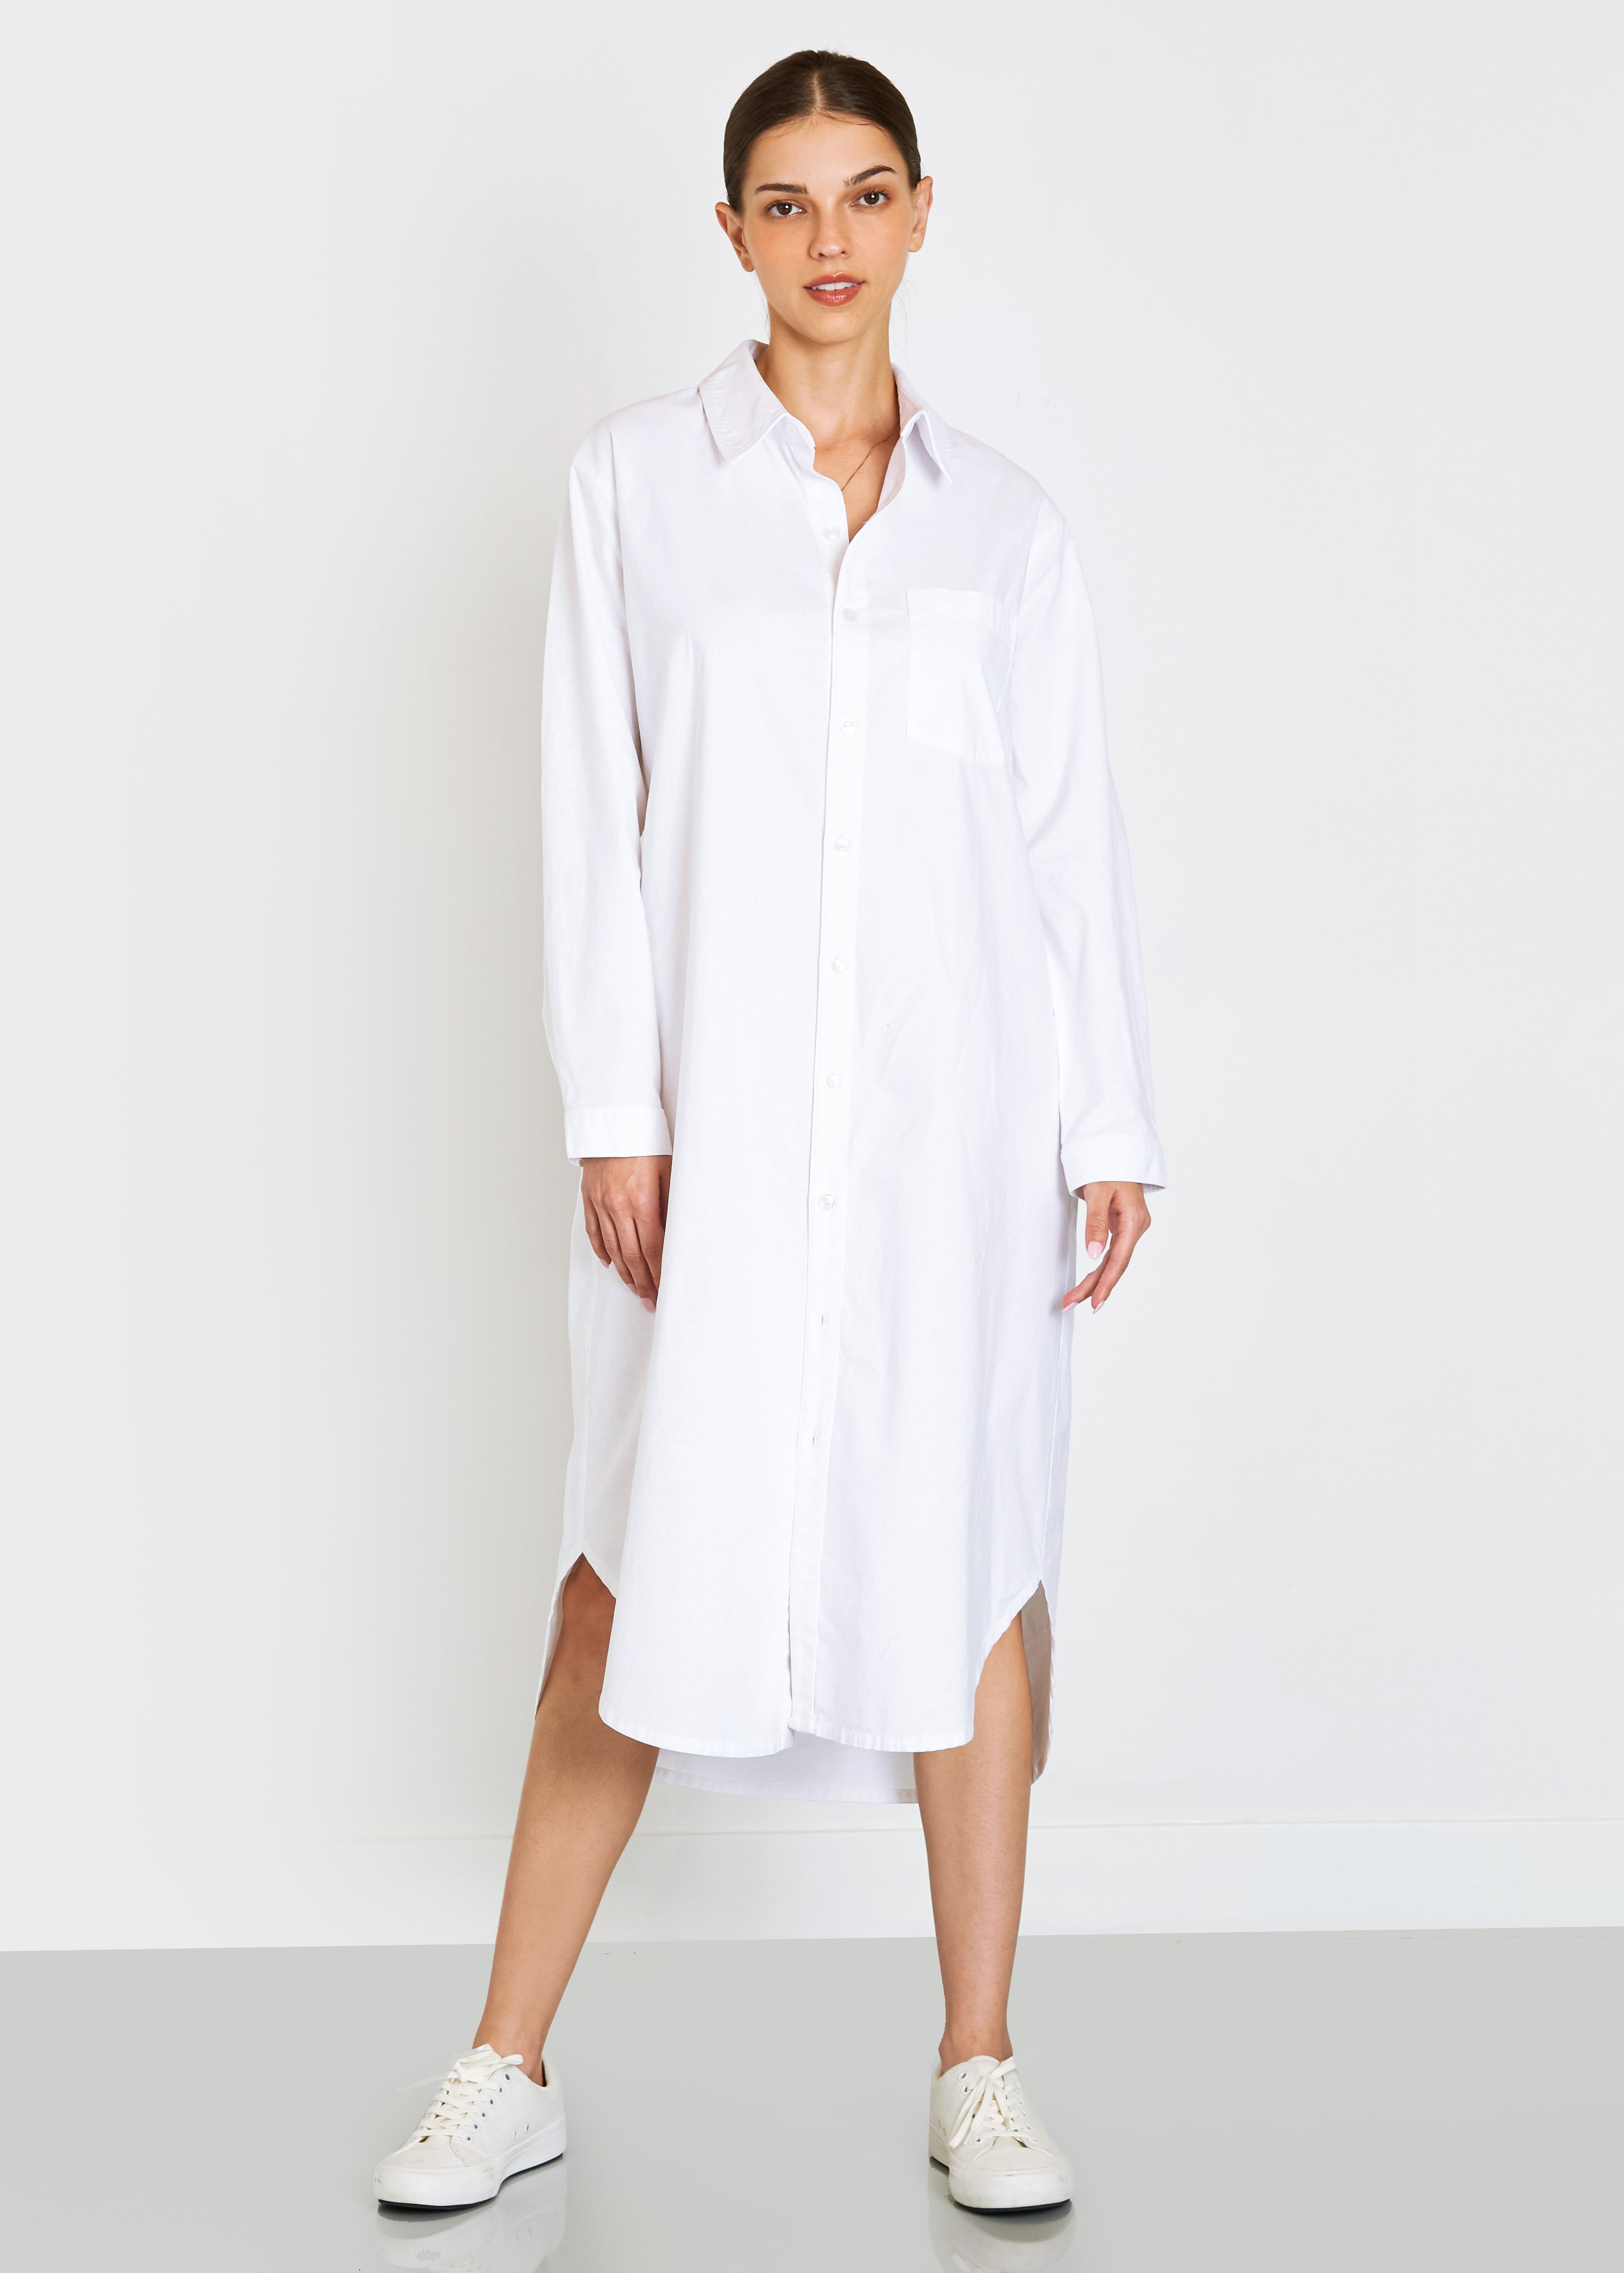 Makenzie Linen Shirt Dress In White - Noend Denim